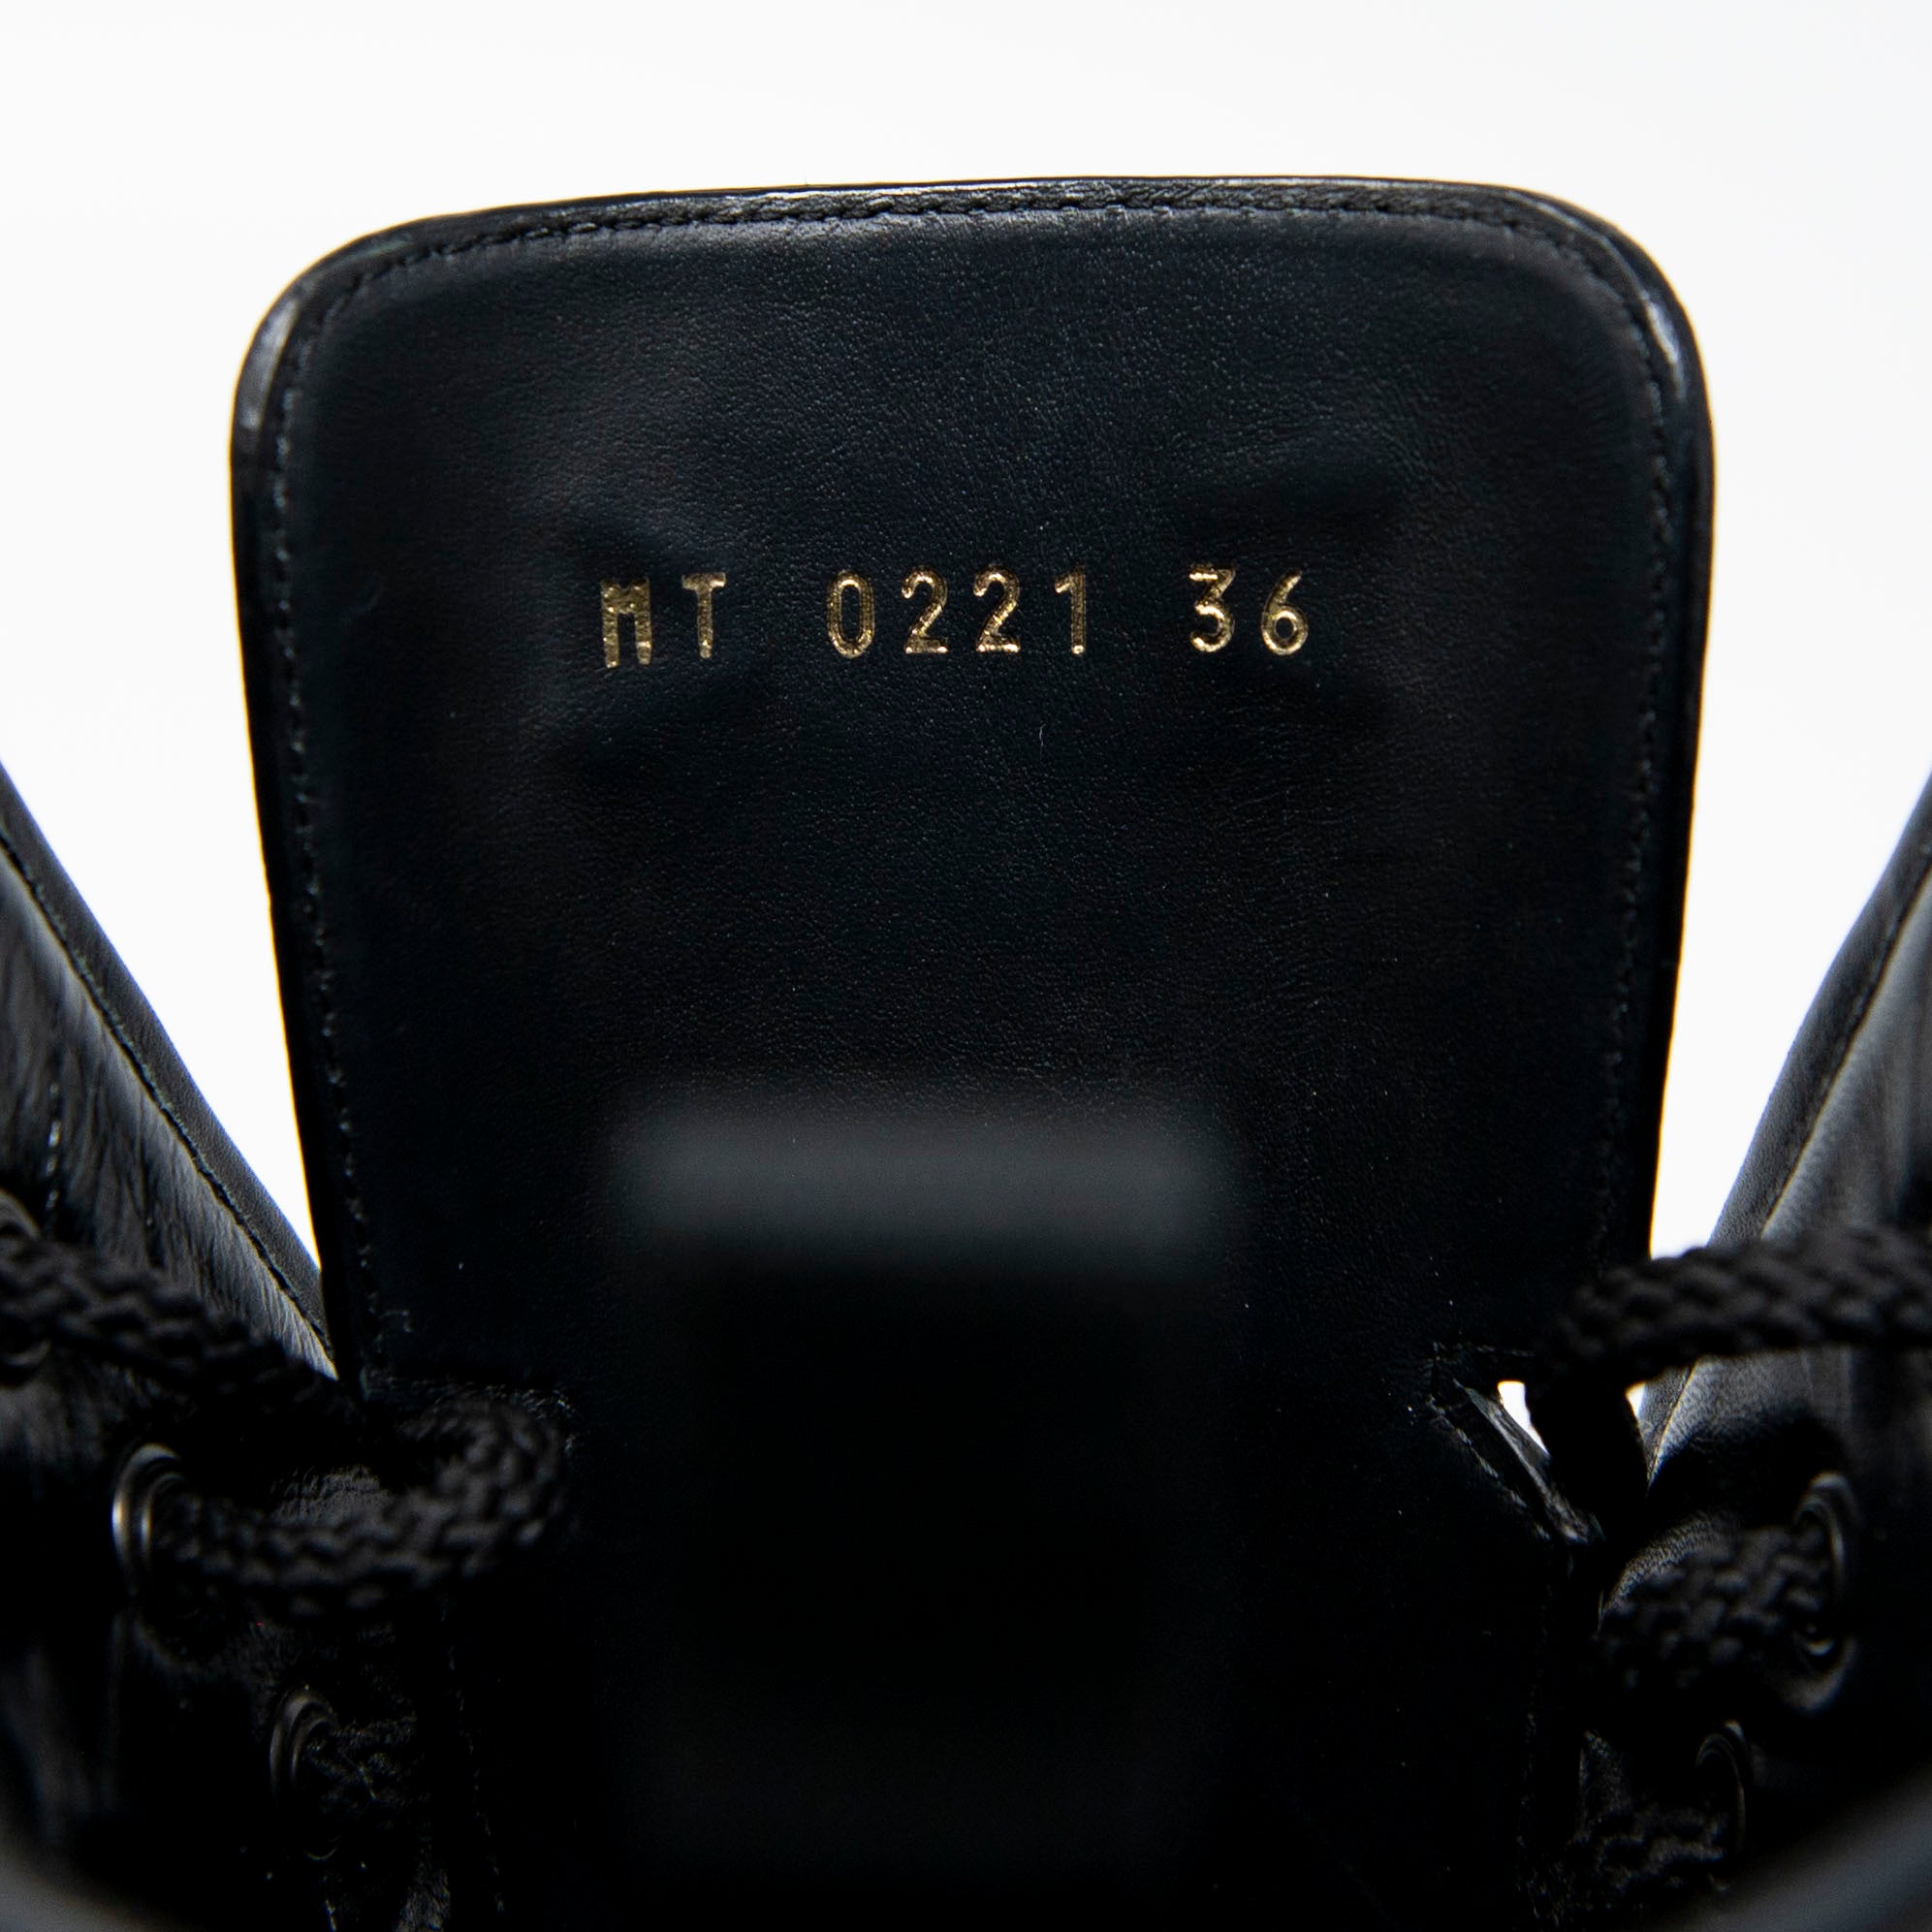 Dior Black D-Major Ankle Boots 36